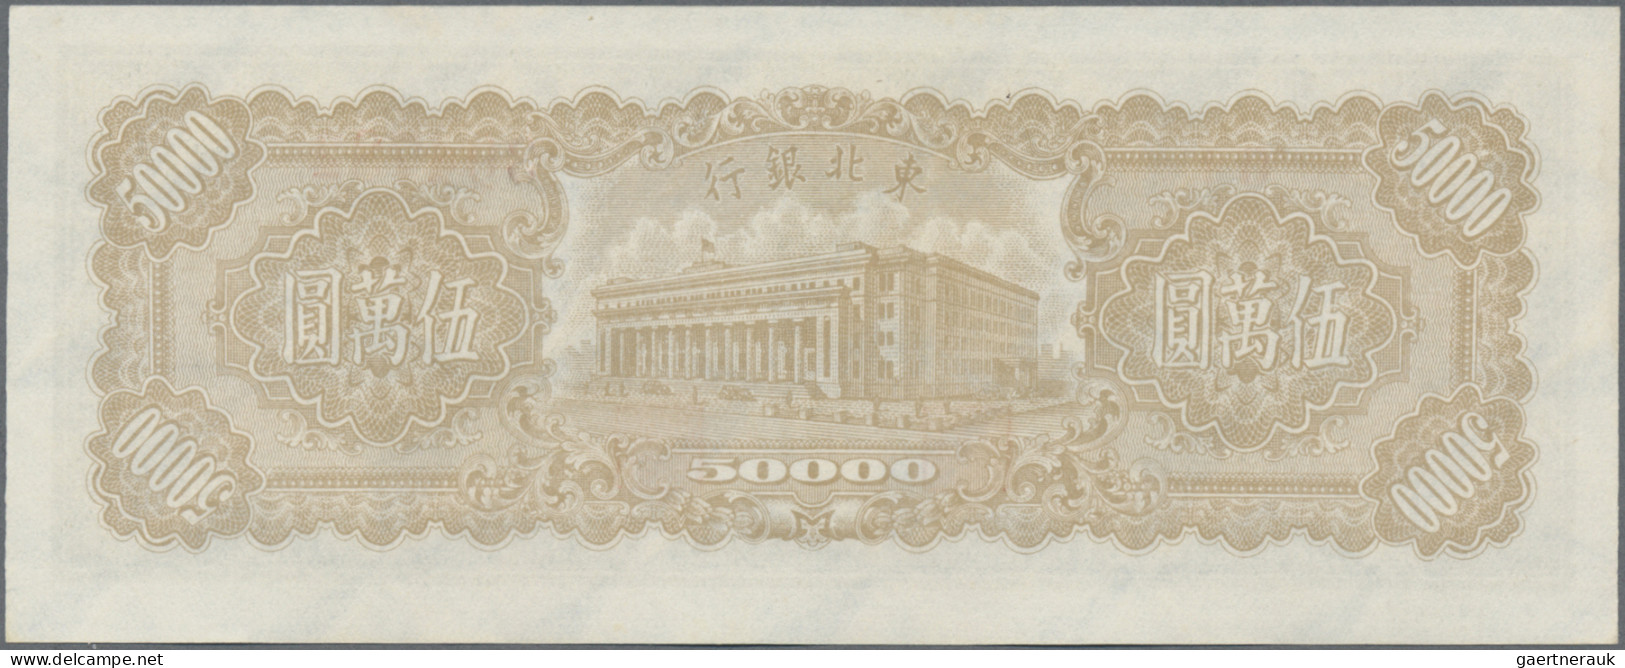 China: TUNG PEI BANK OF CHINA / BANK OF DUNG BAI, 50.000 Yuan 1948, P.S3763 In P - Chine